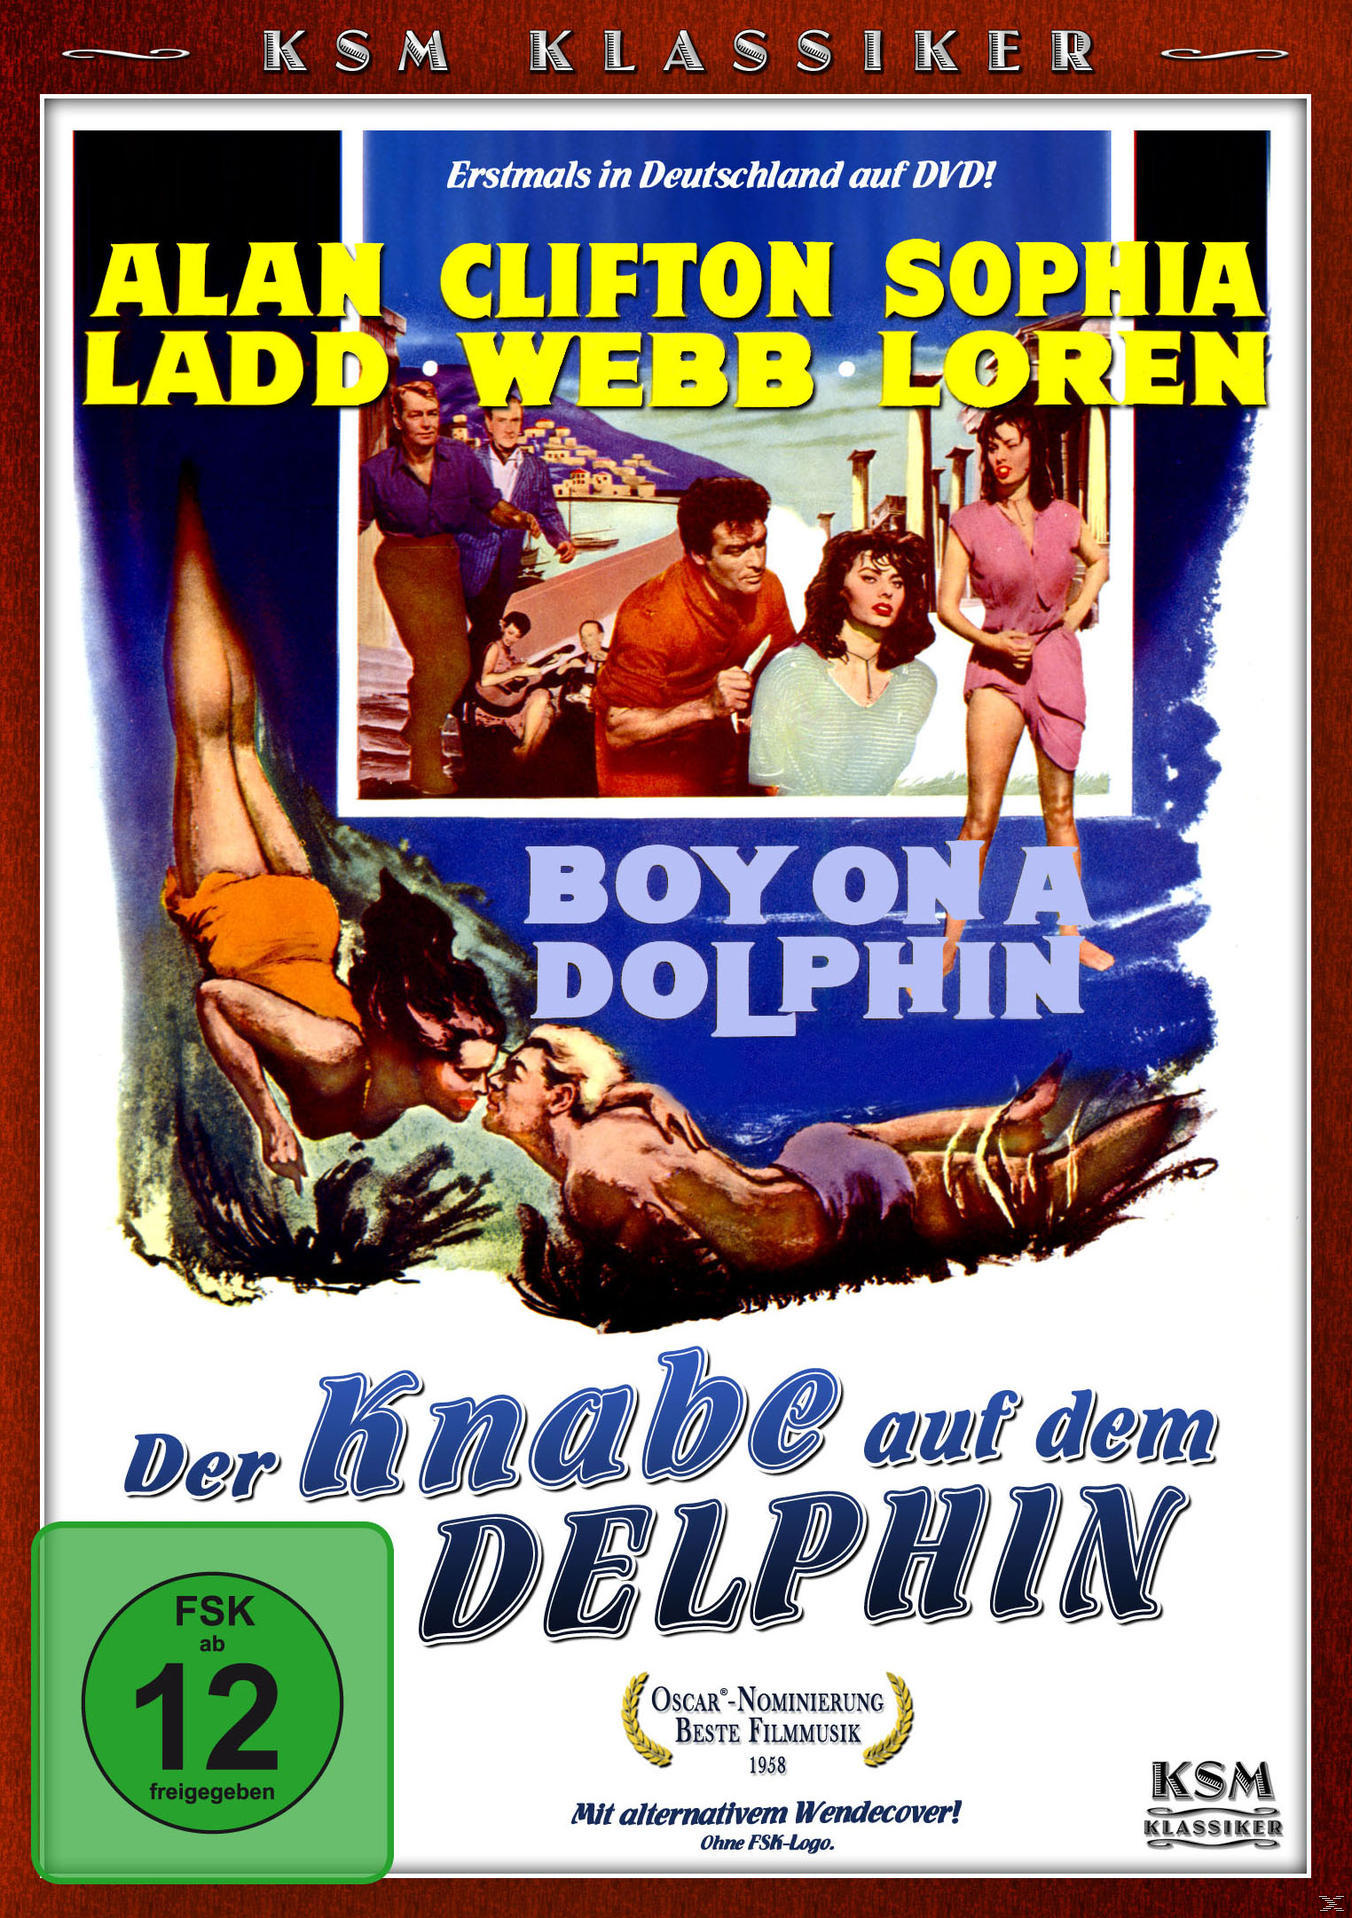 Der Knabe (KSM DVD Klassiker) Delphin dem auf